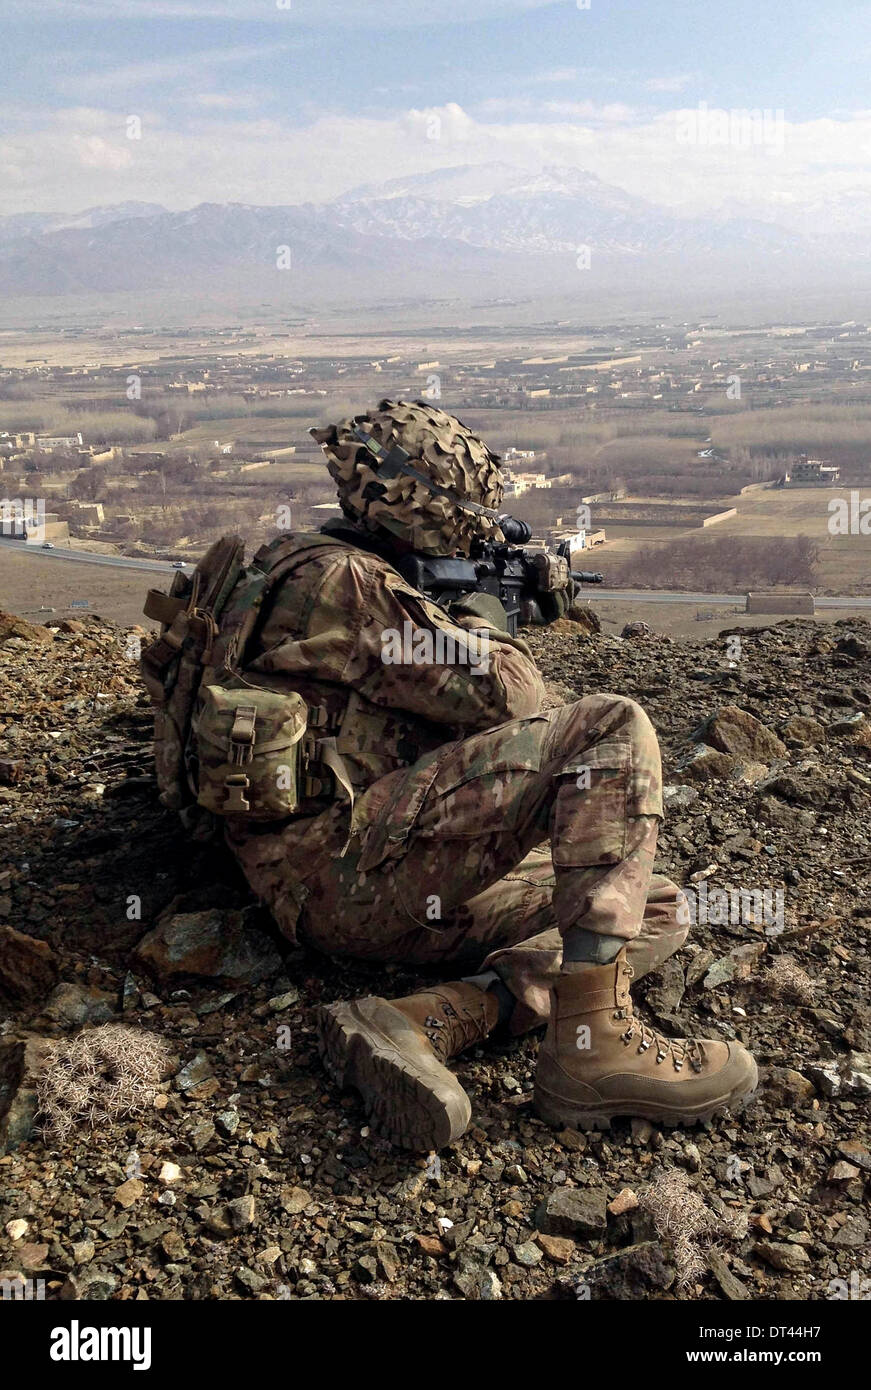 Ein US-Soldat aus der 10th Mountain Division auf Patrouille in unwegsamem Gelände 23. Januar 2014 in der Nähe der Ortschaft Mohammad Agah in Provinz Logar, Afghanistan. Stockfoto